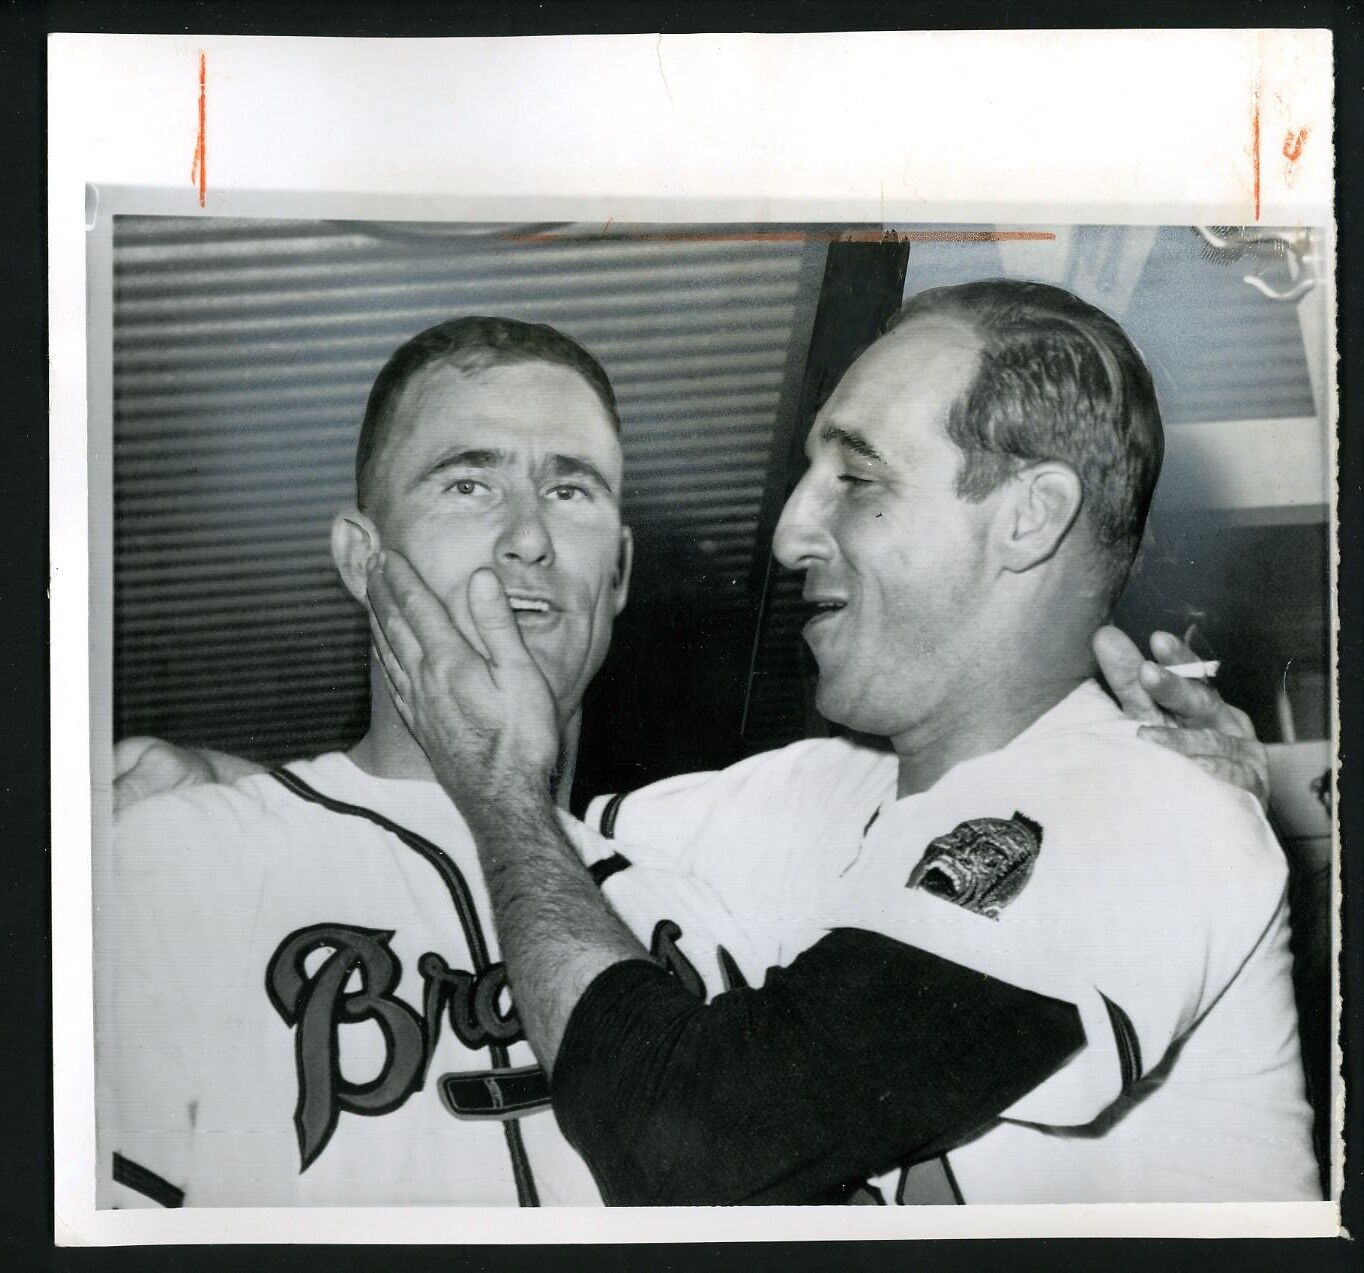 Warren Spahn & Lew Burdette 1958 World Series Press Photo Poster painting Milwaukee Braves